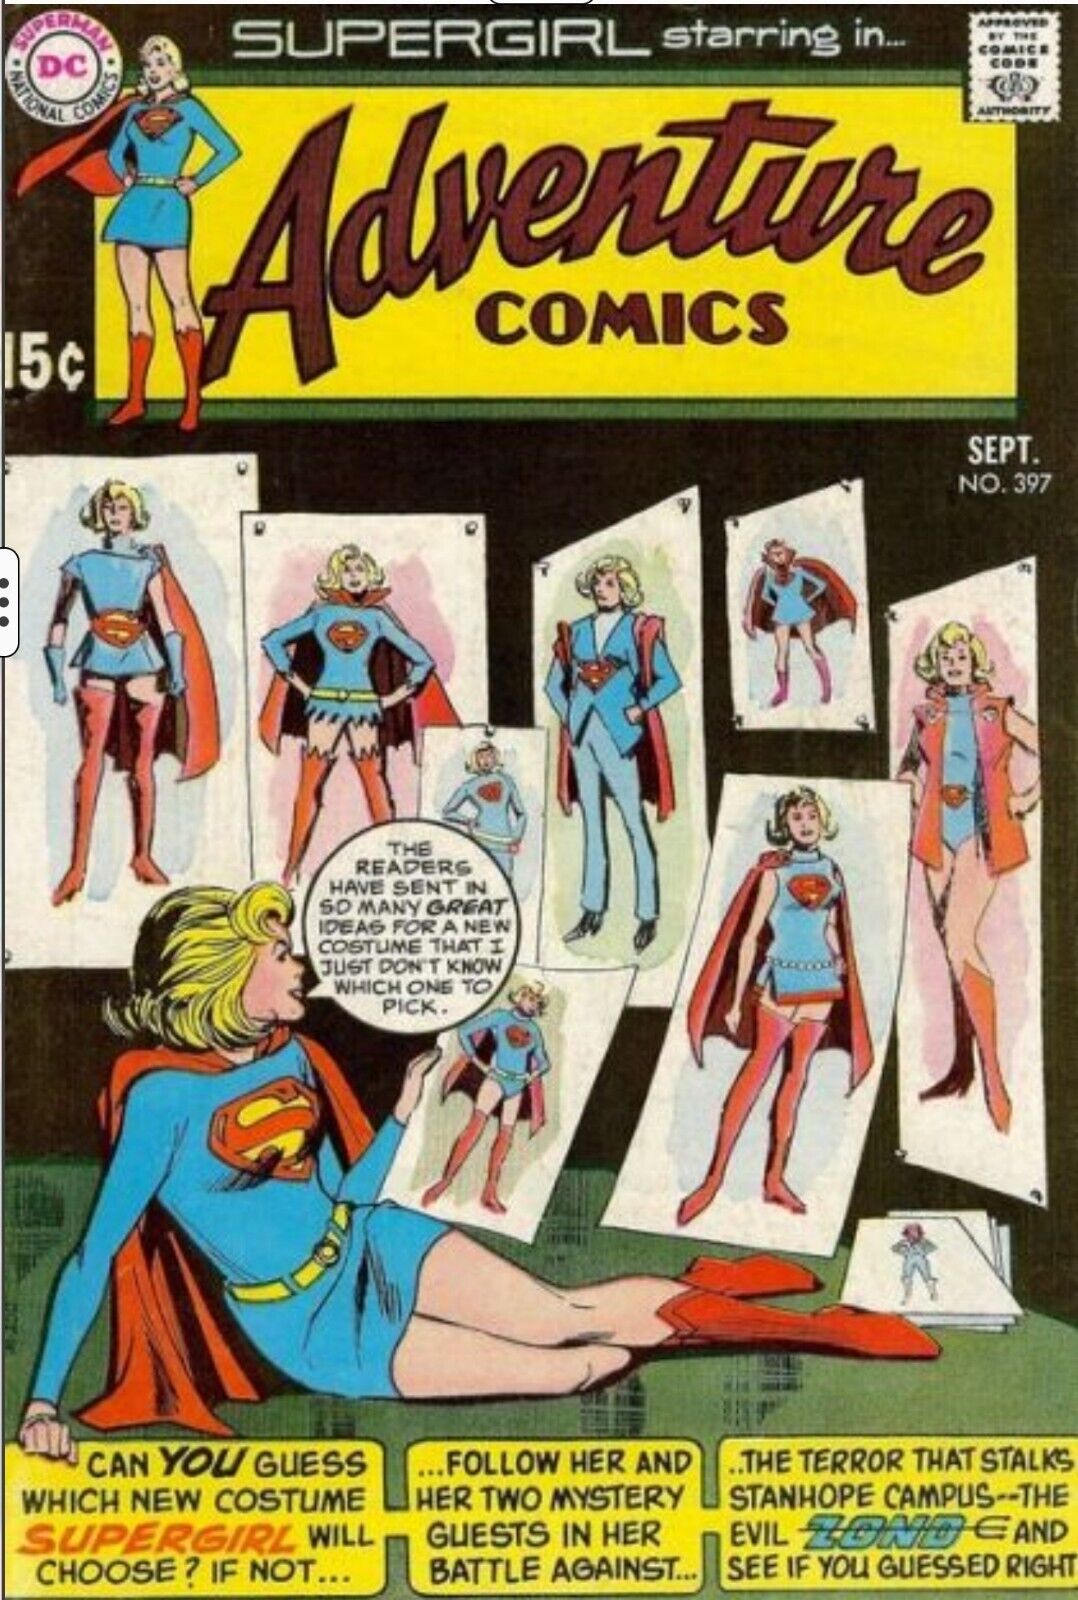 DC Comics Presents - Adventure Comics Vol.1 #397